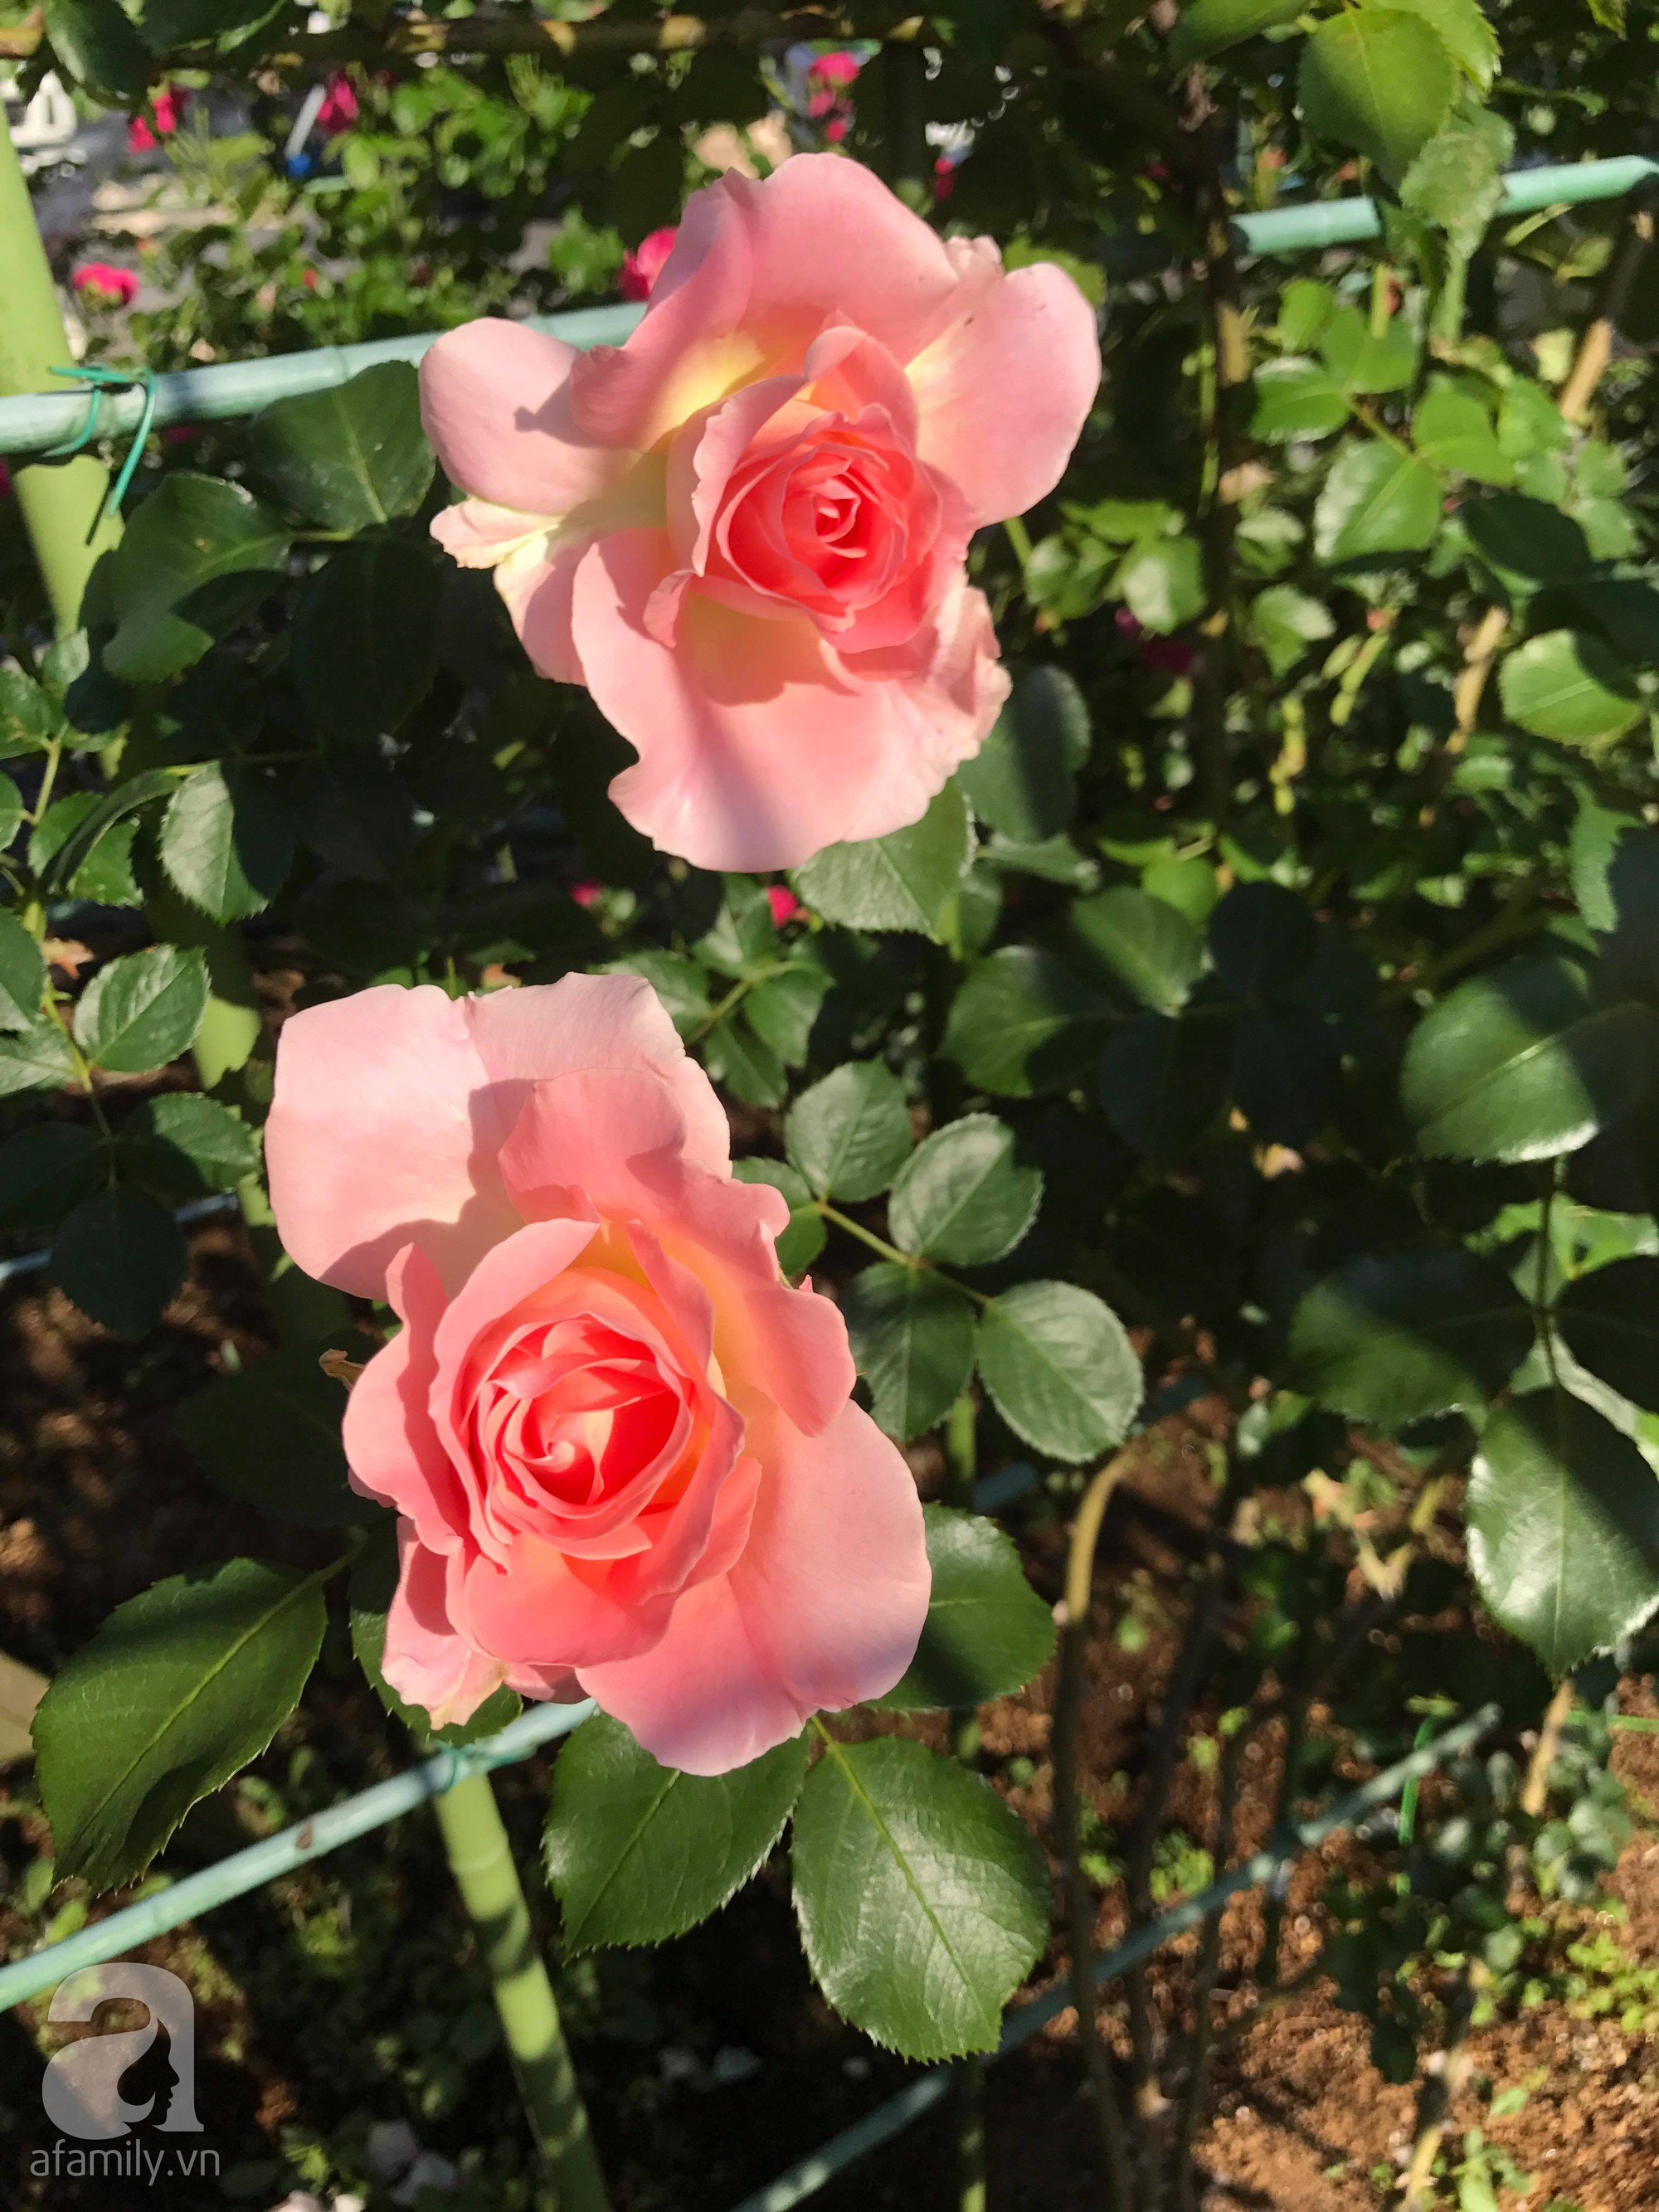 Bức tường hoa hồng đẹp như mơ trong sân vườn vỏn vẹn 6m² của người phụ nữ bỏ ra 5 năm miệt mài chăm sóc - Ảnh 12.